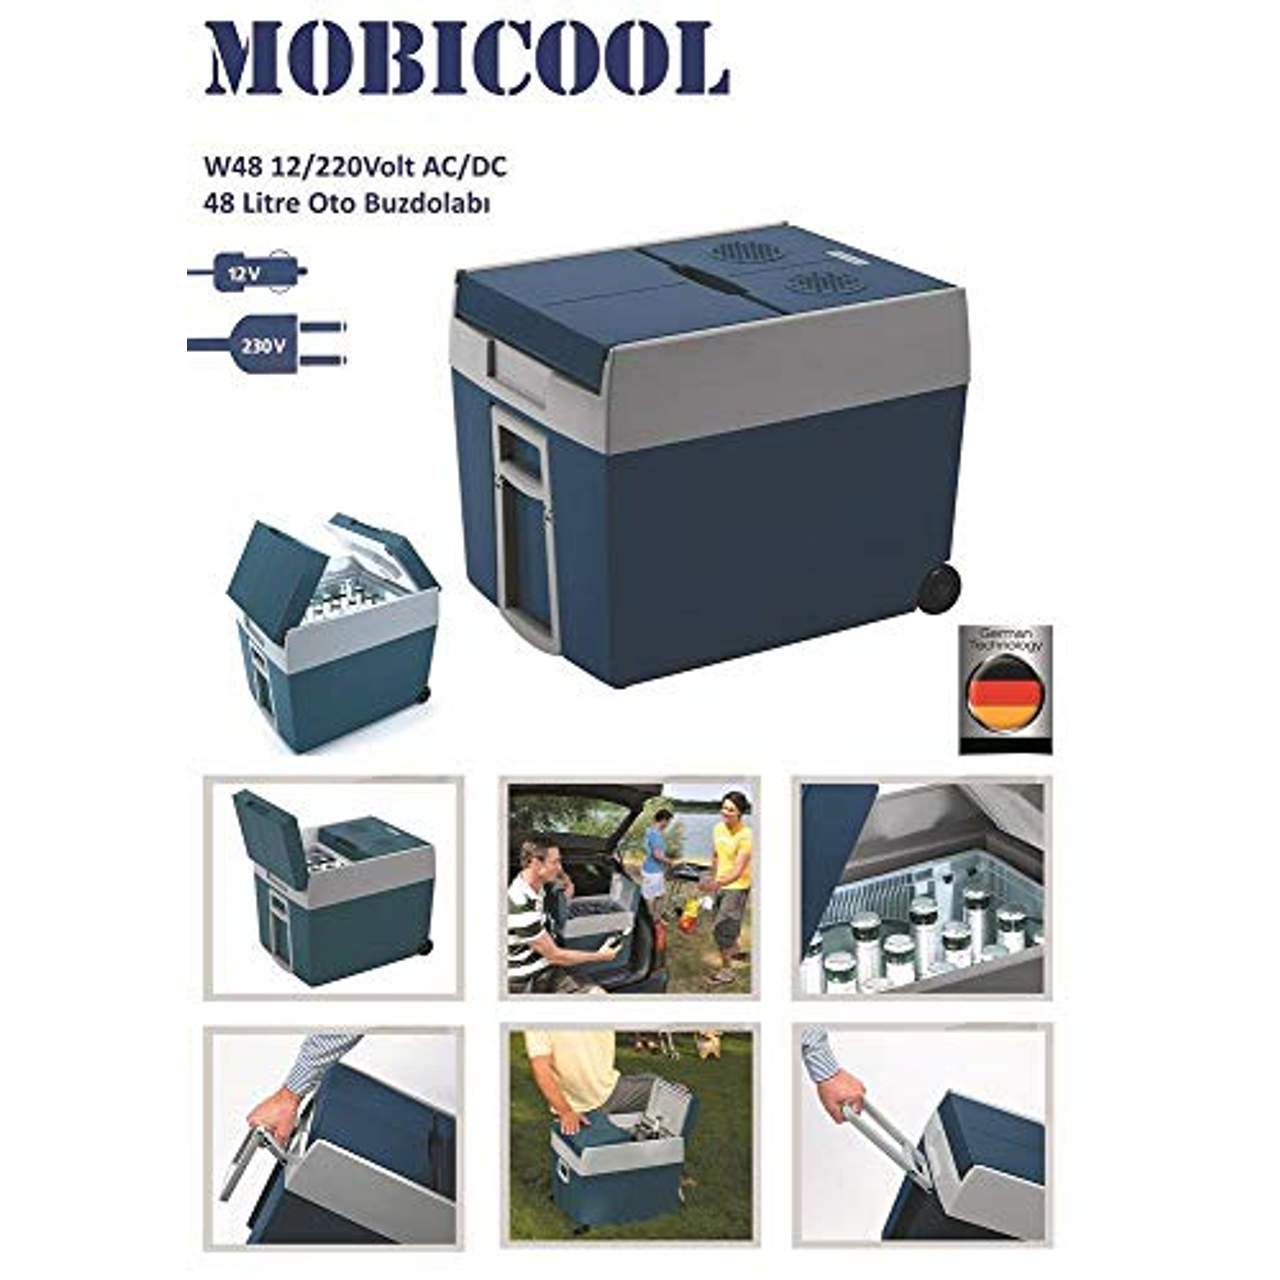 Mobicool W48 12 230 Volt